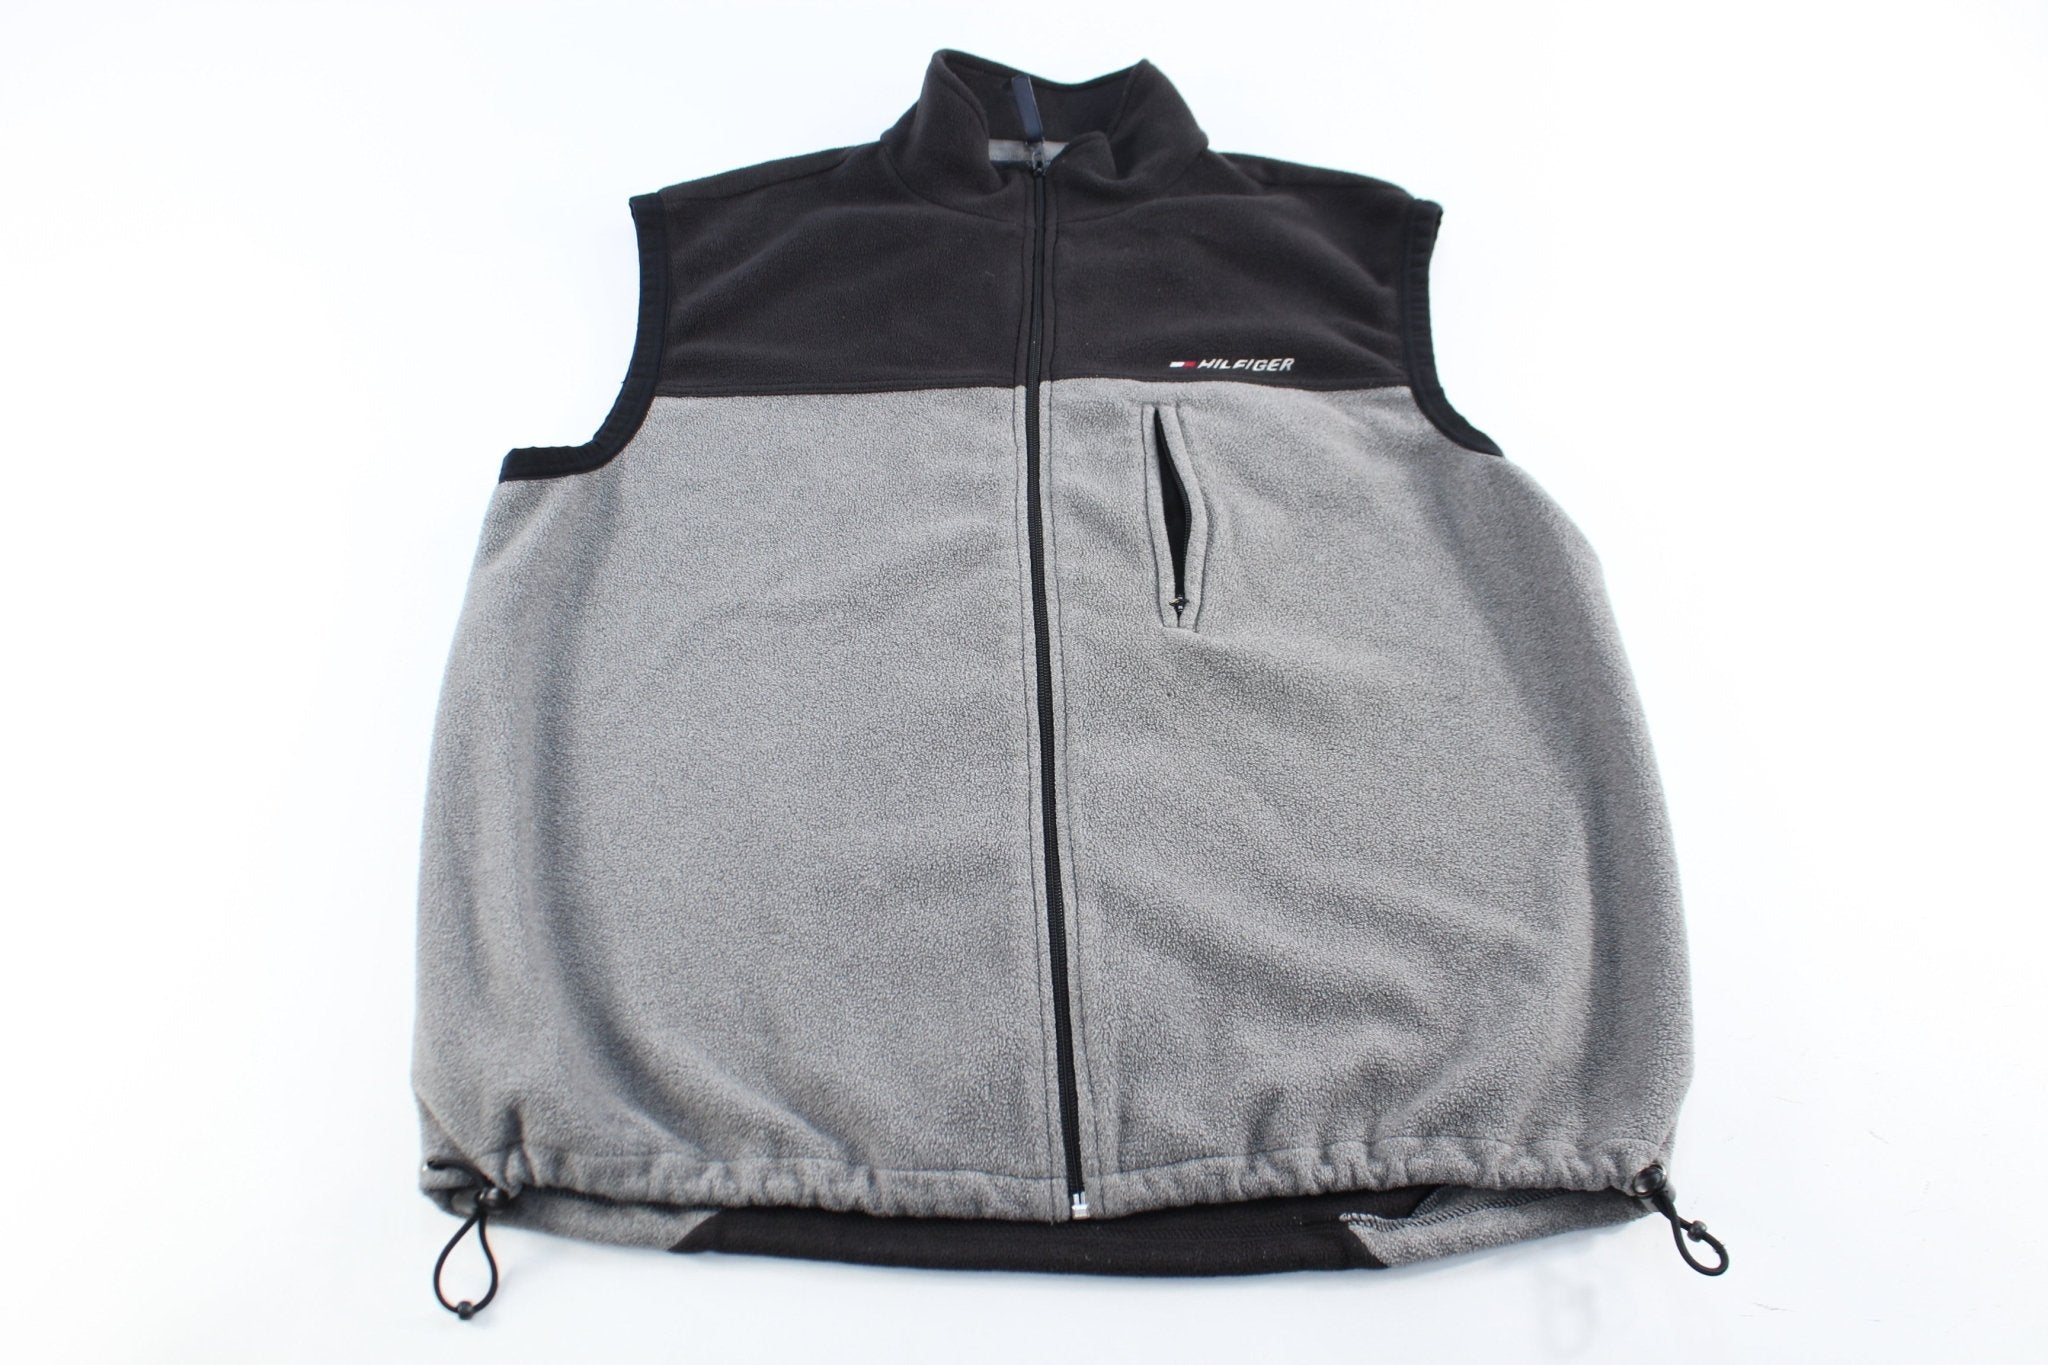 Tommy Hilfiger Embroidered Black & Grey Zip Up Vest - ThriftedThreads.com